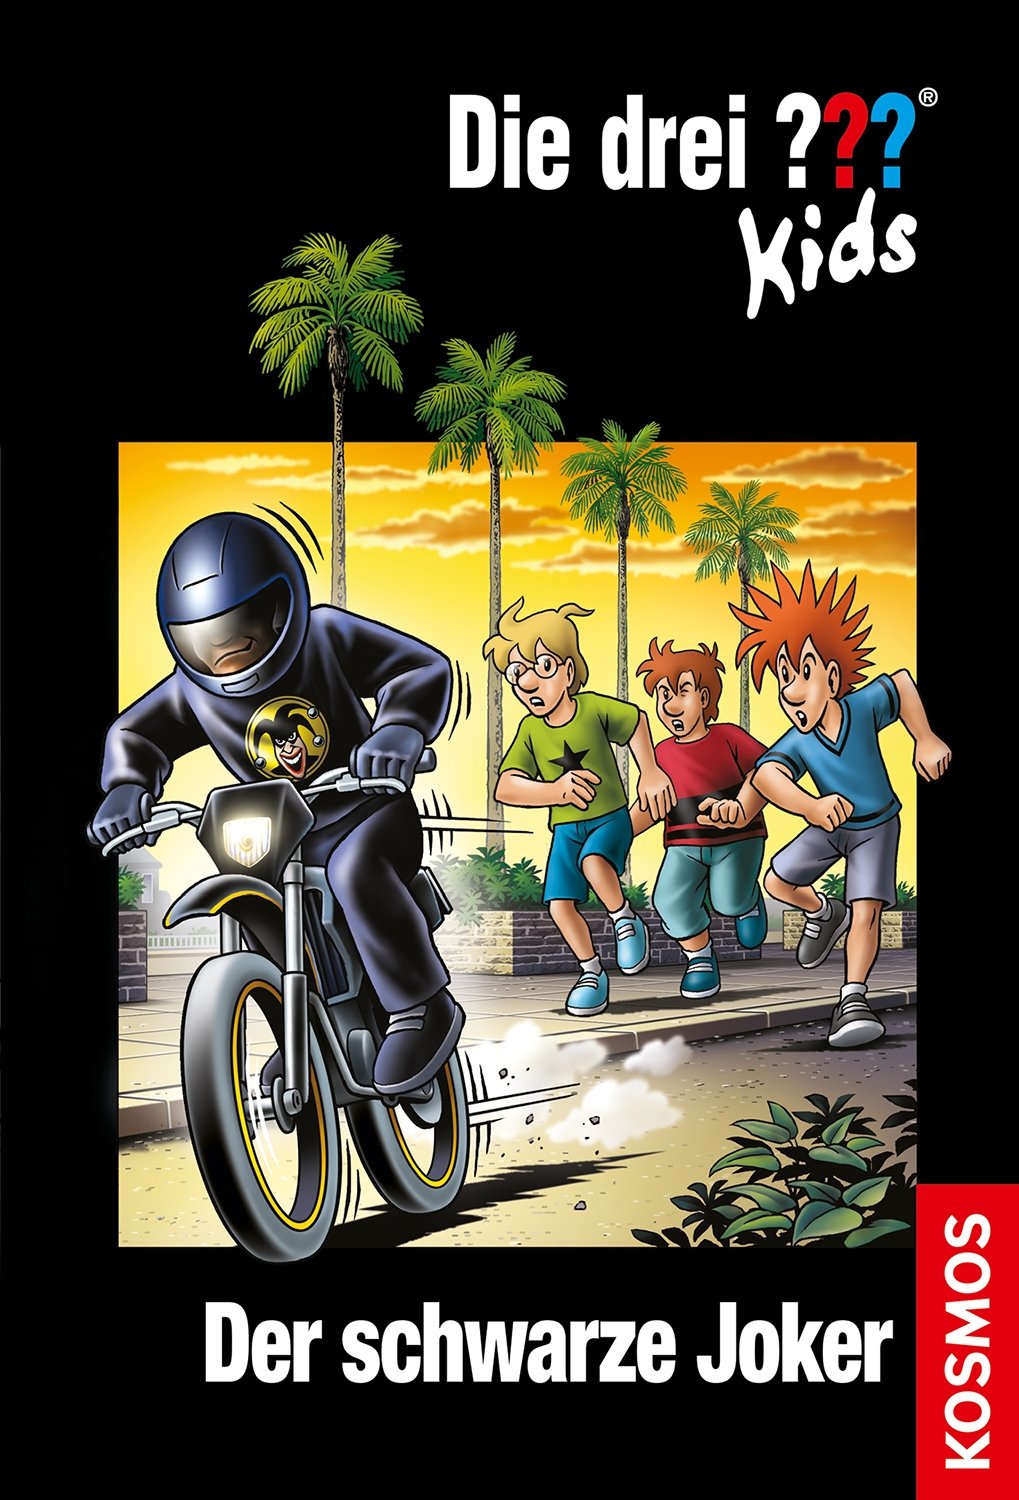 Die Drei ??? (Fragezeichen) Kids, Buch-Band 55: Die drei ??? Kids, 55, Der schwarze Joker